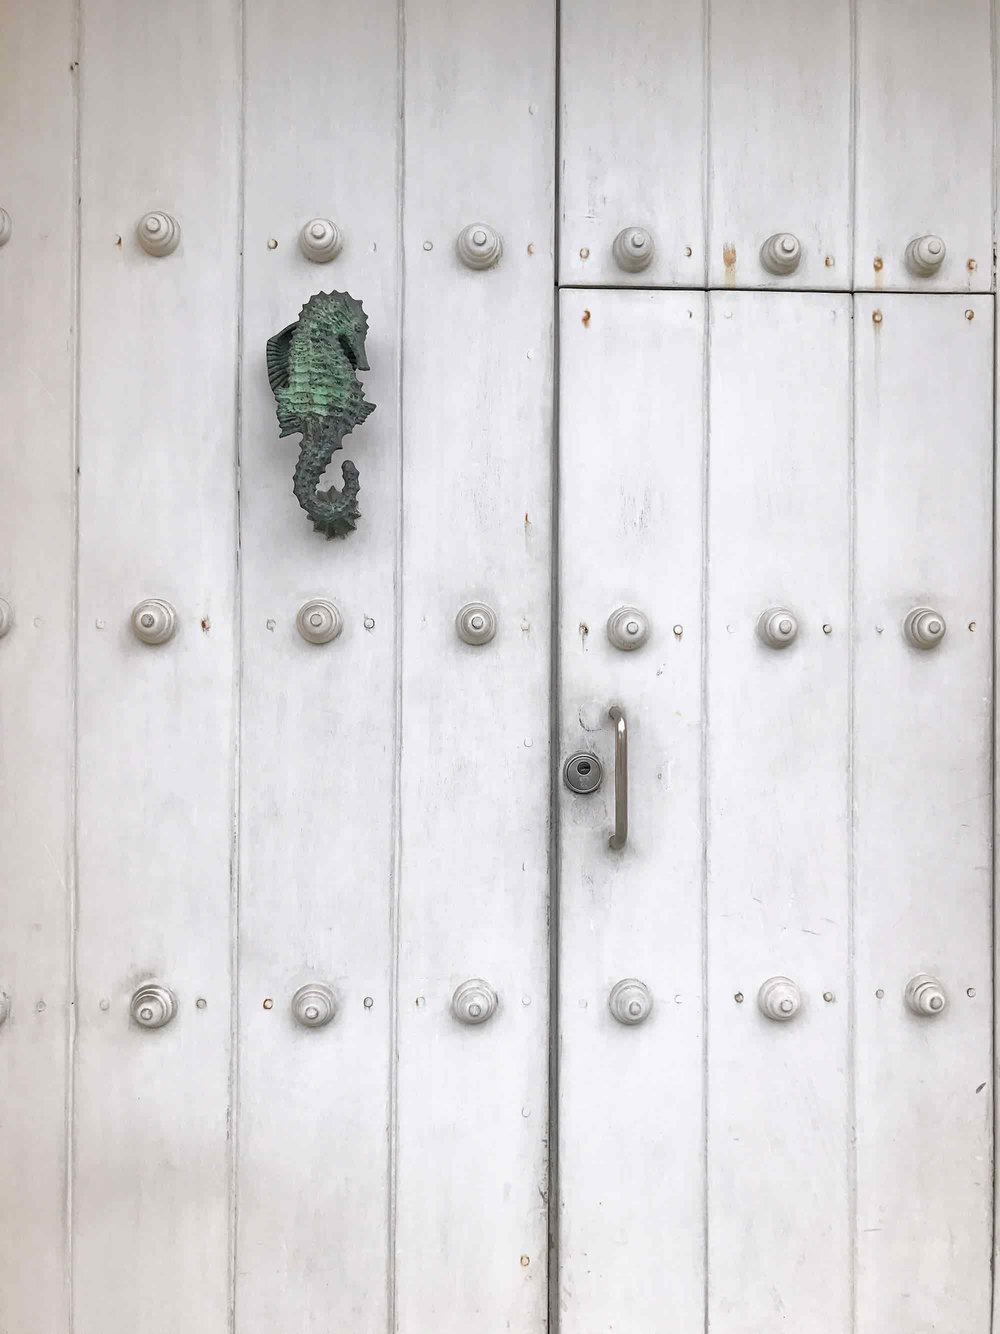 Seahorse door knocker | Doors and Door Knockers of Cartagena, Colombia | pictures of Cartagena, Colombia